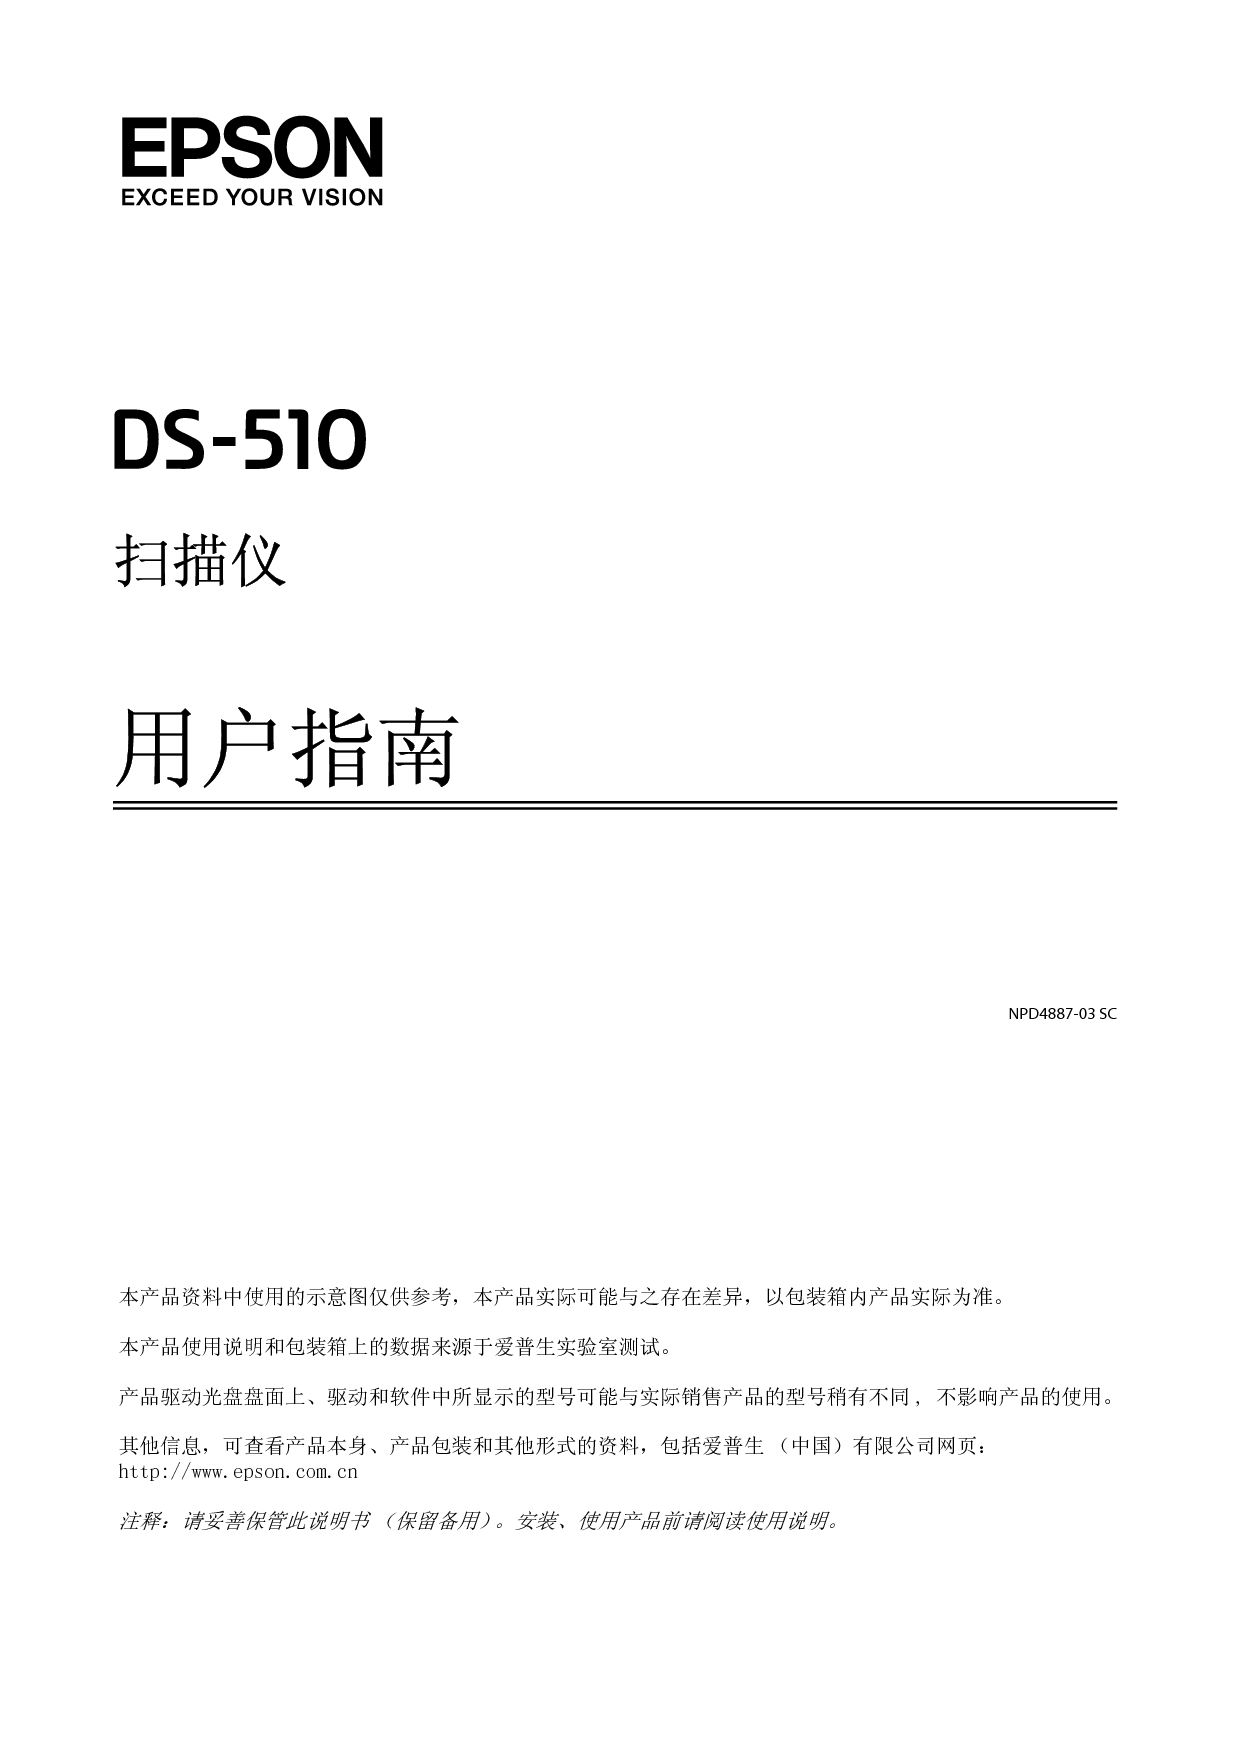 爱普生 Epson DS-510 用户指南 封面